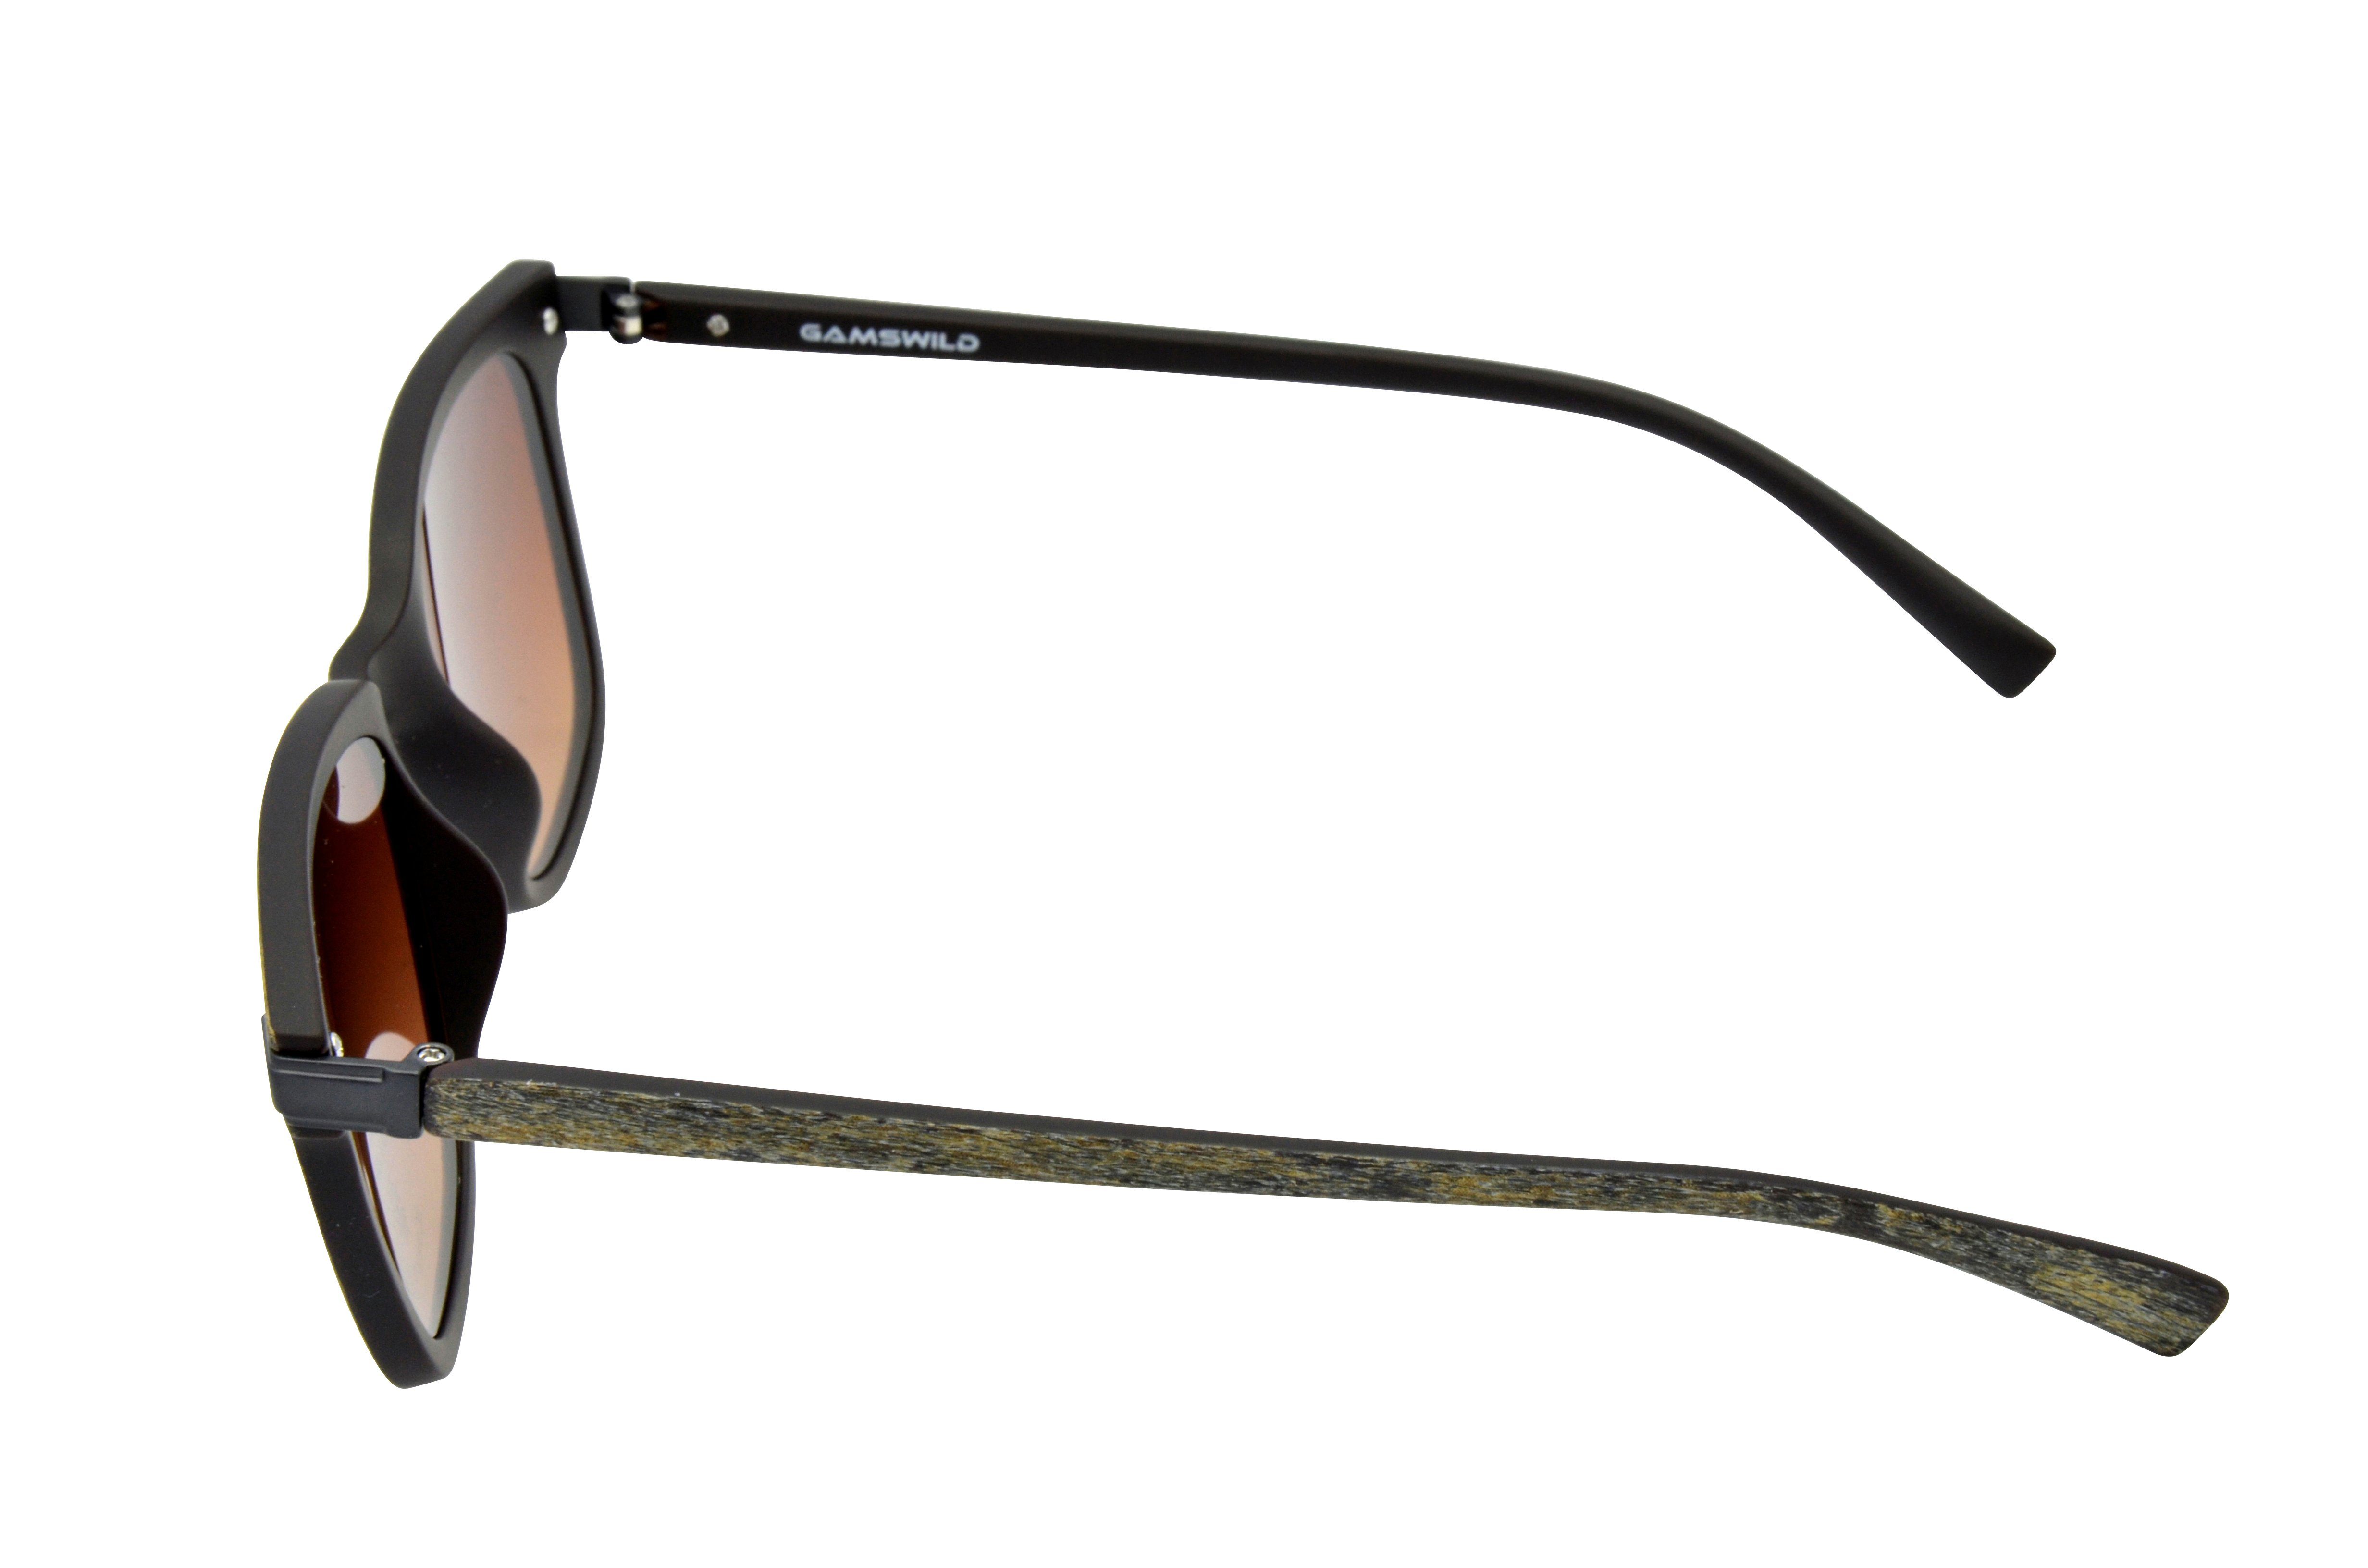 Holzoptik, Brille geschnittenes Unisex GAMSSTYLE Modell grau Gamswild Sonnenbrille Damen Mode Herren WM7032 braun, schmal